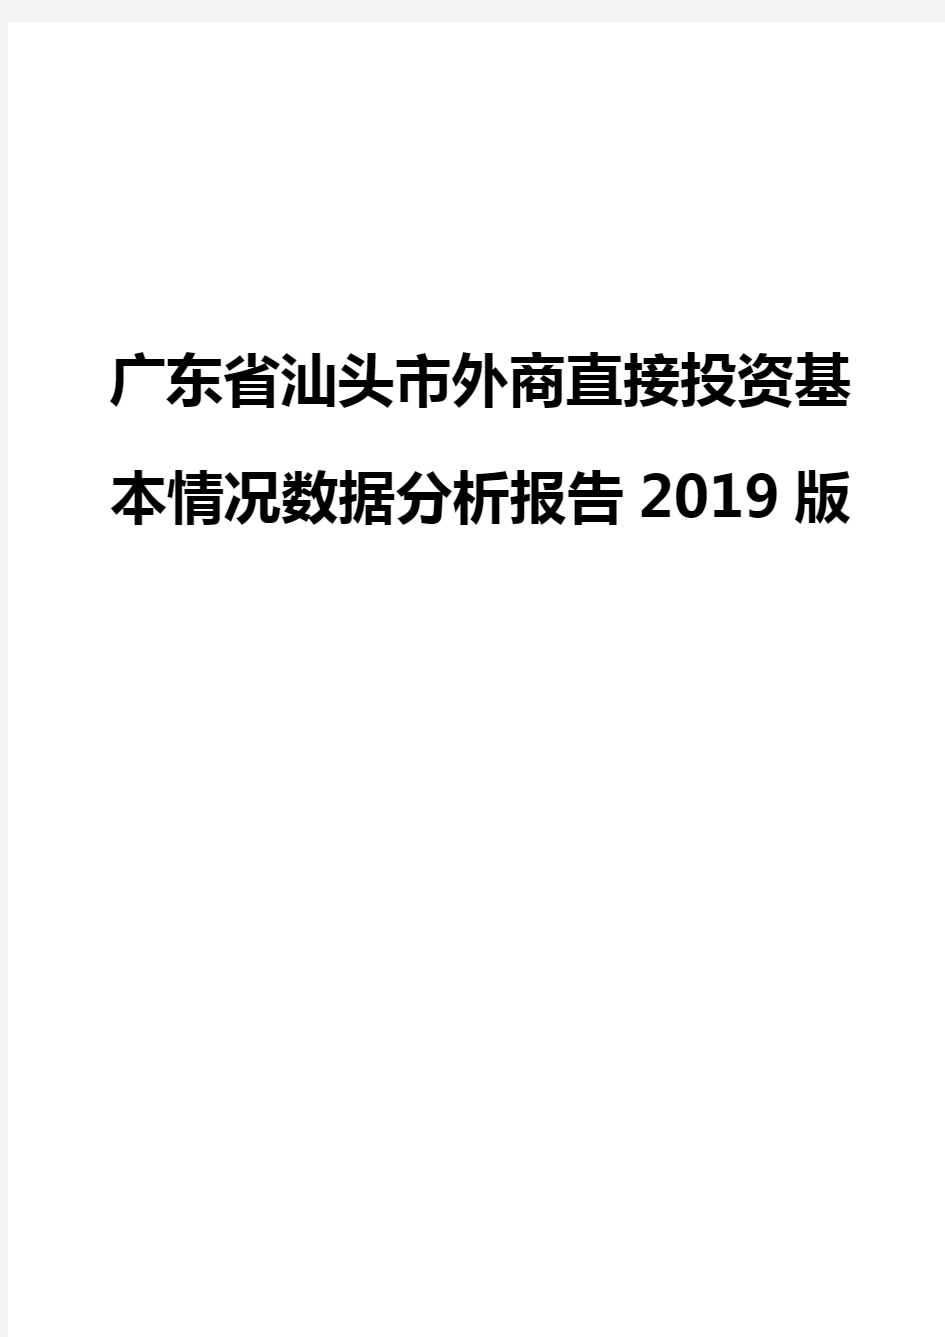 广东省汕头市外商直接投资基本情况数据分析报告2019版